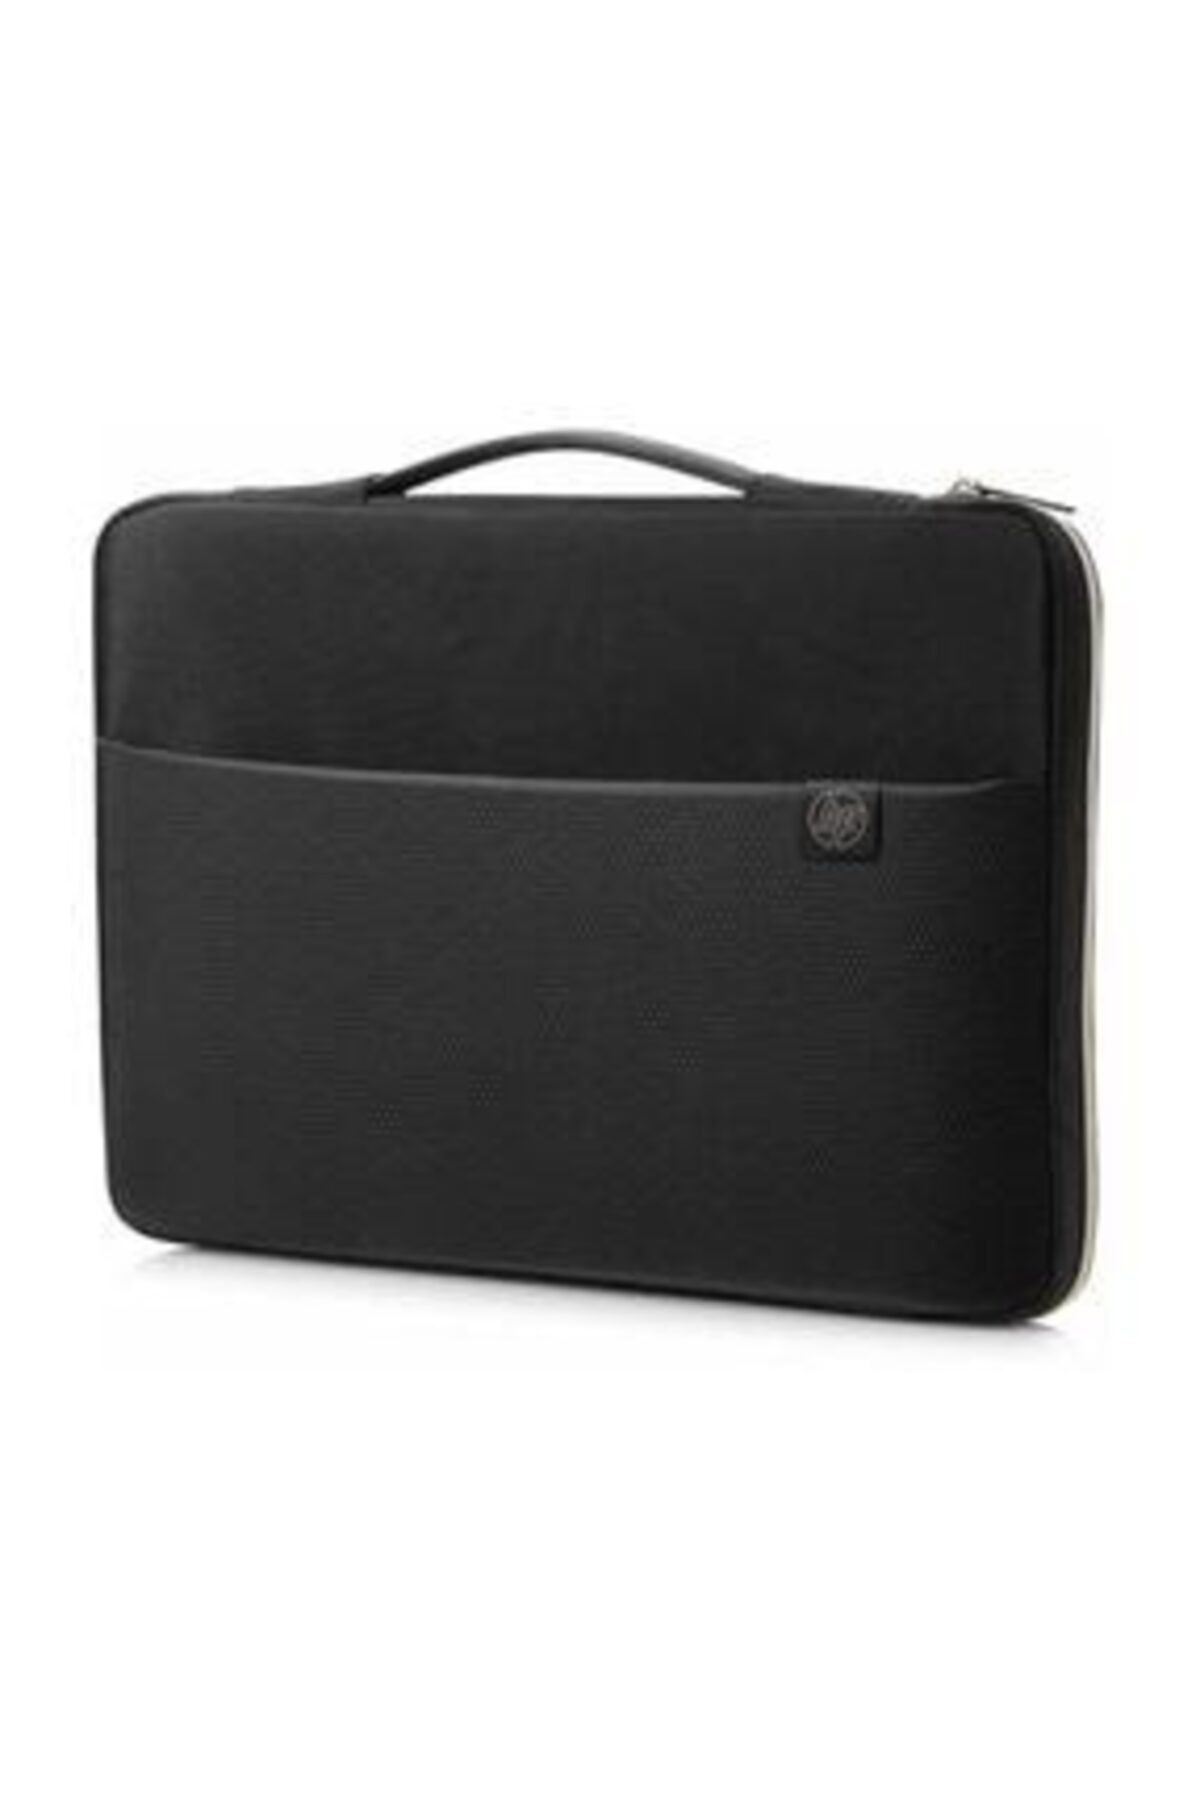 HP 14" Carry Sleeve Notebook Taşıma Kılıfı 3xd33aa 3xd33aa